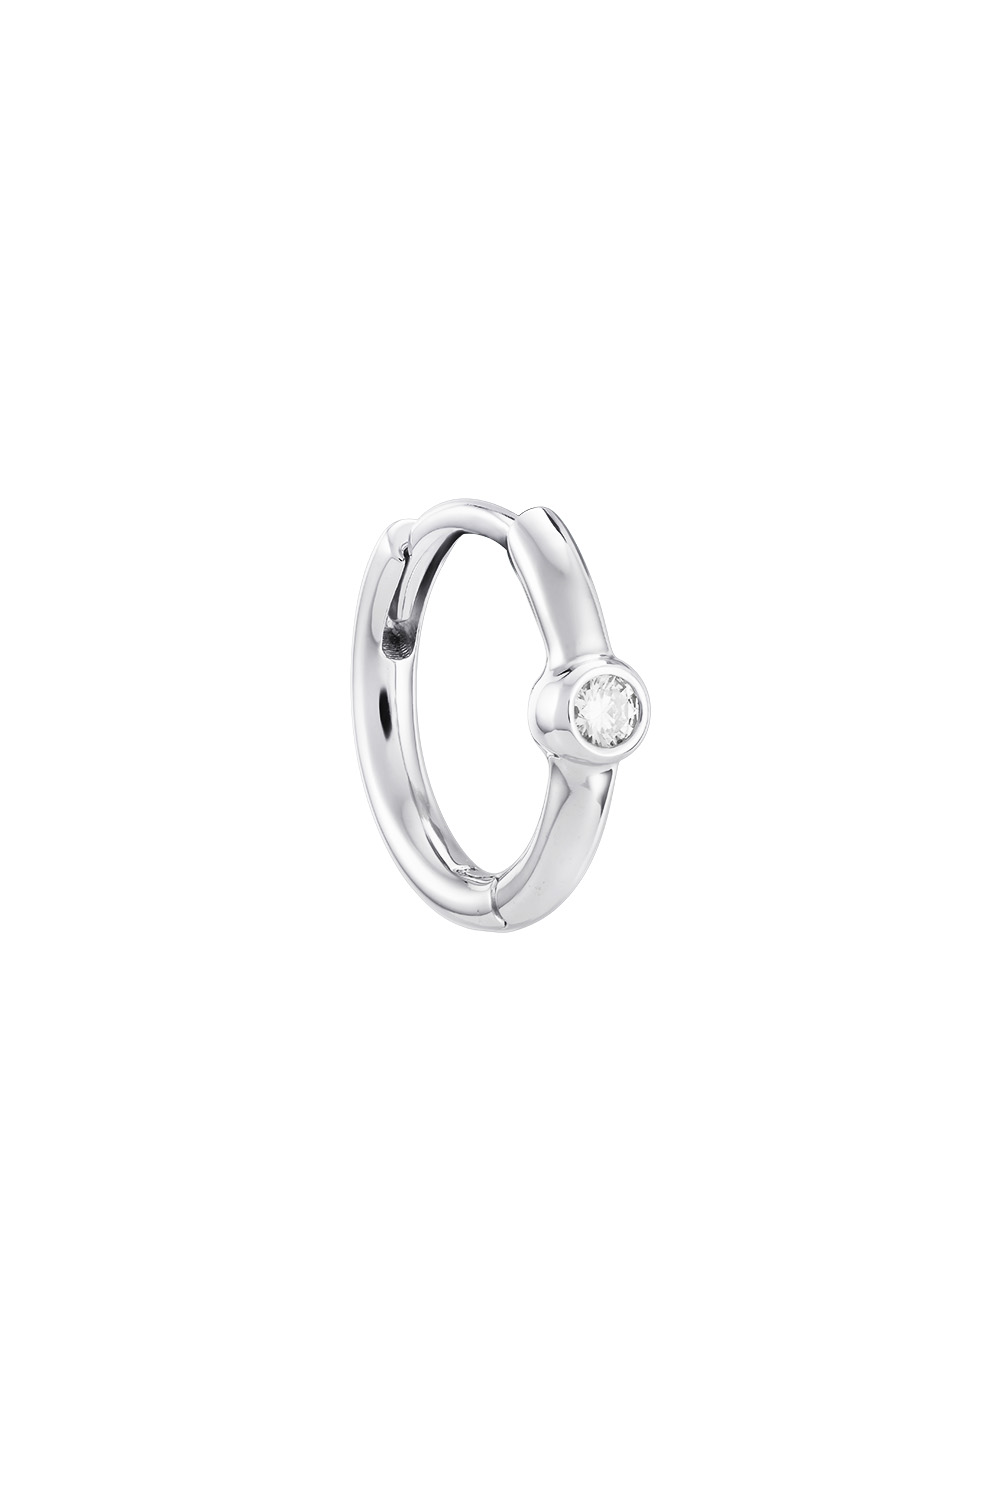 Кликер-кольцо с бриллиантом из белого золота из белого золота 585 – купитьв интернет-магазине AVGVST